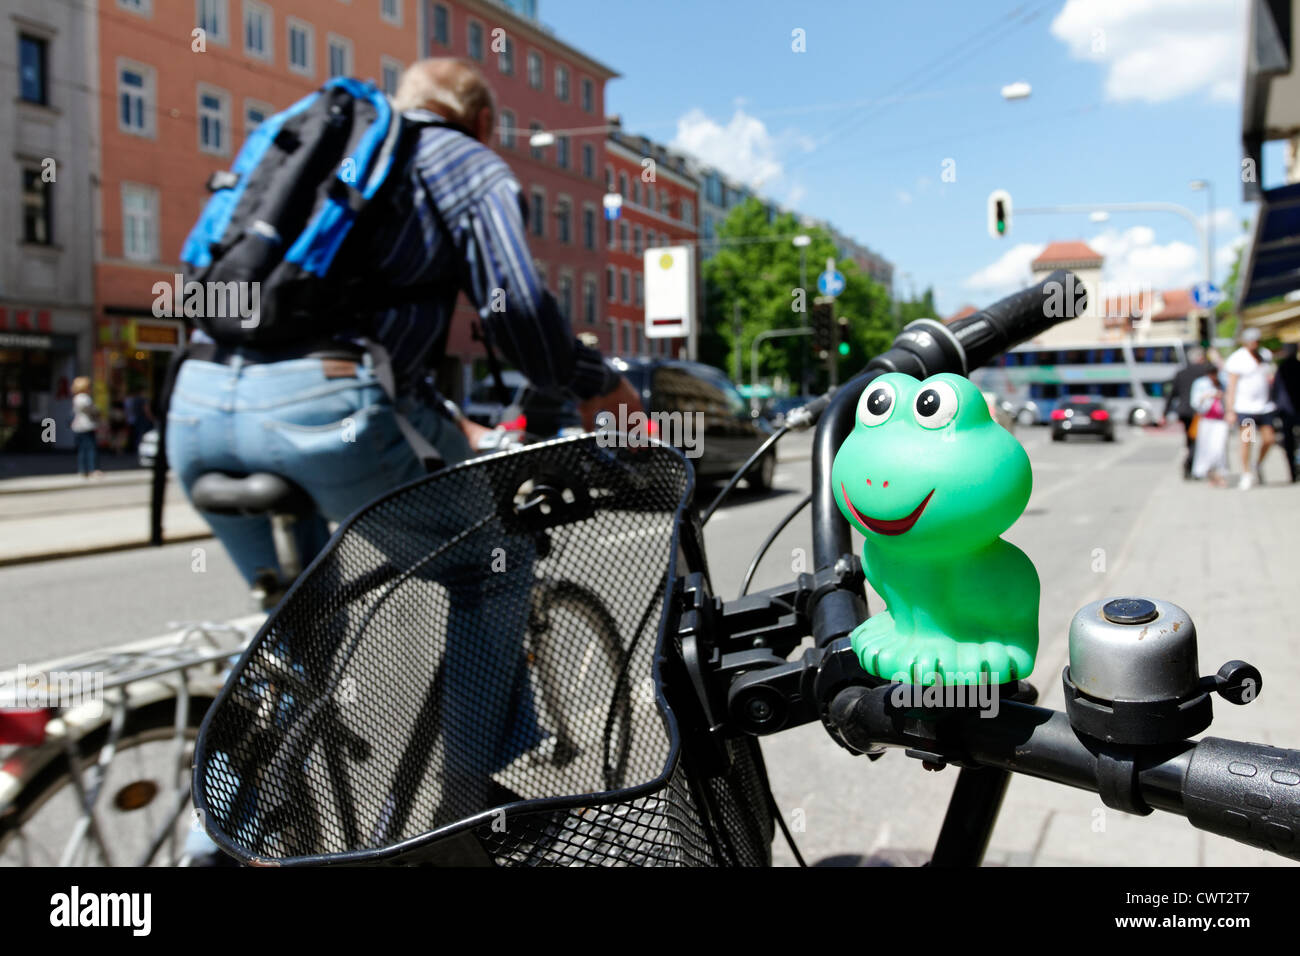 Mascotte de caoutchouc vert sur guidon de vélo, Munich Haute-bavière Allemagne Banque D'Images